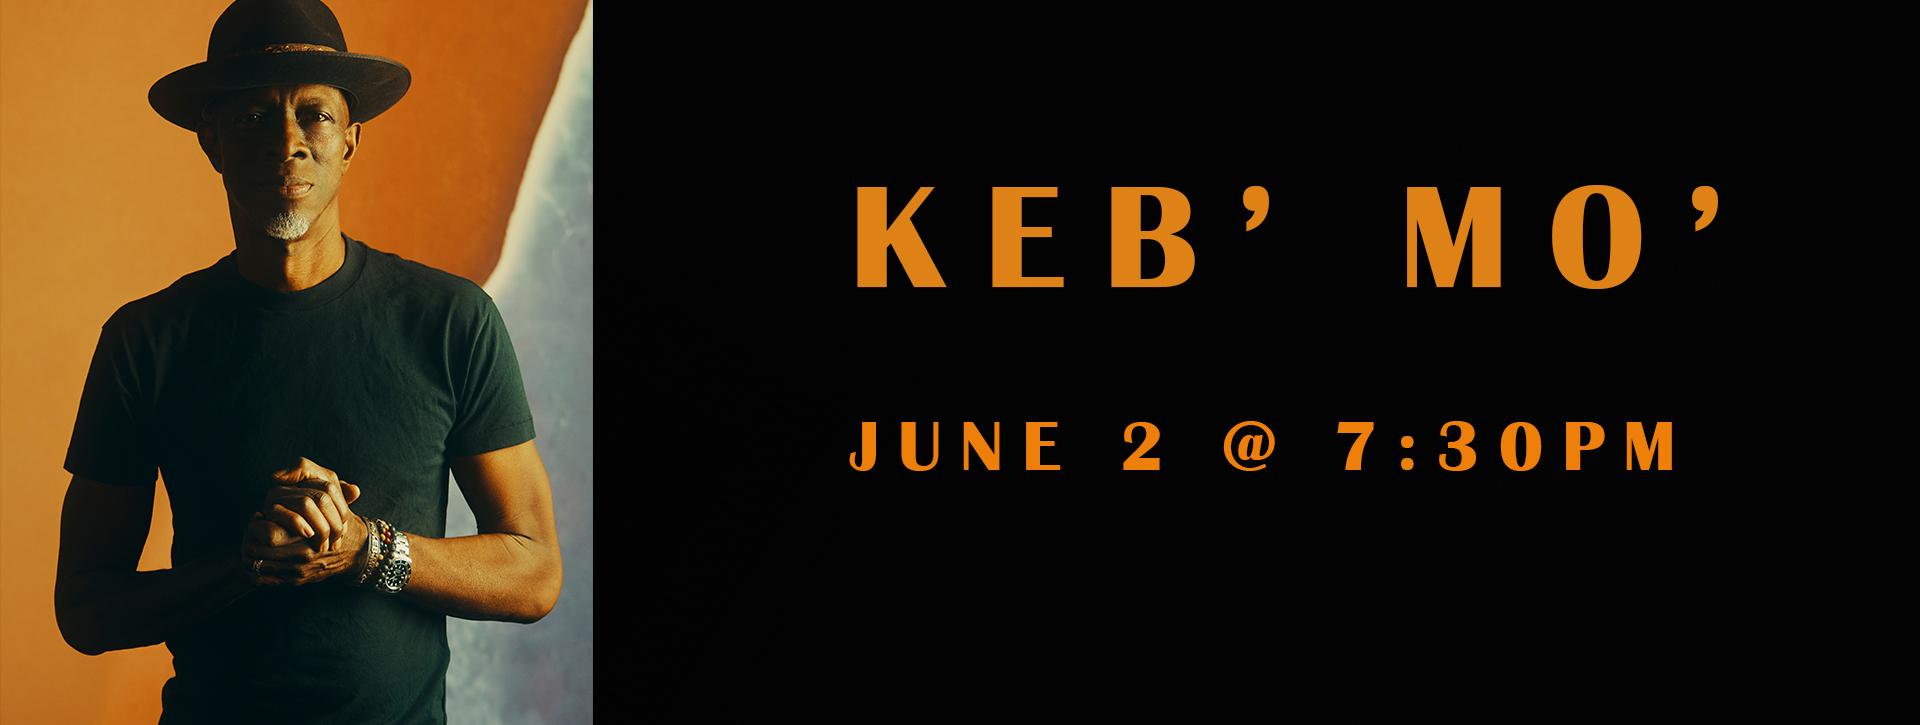 Keb' Mo'  - June 2 @ 7:30pm